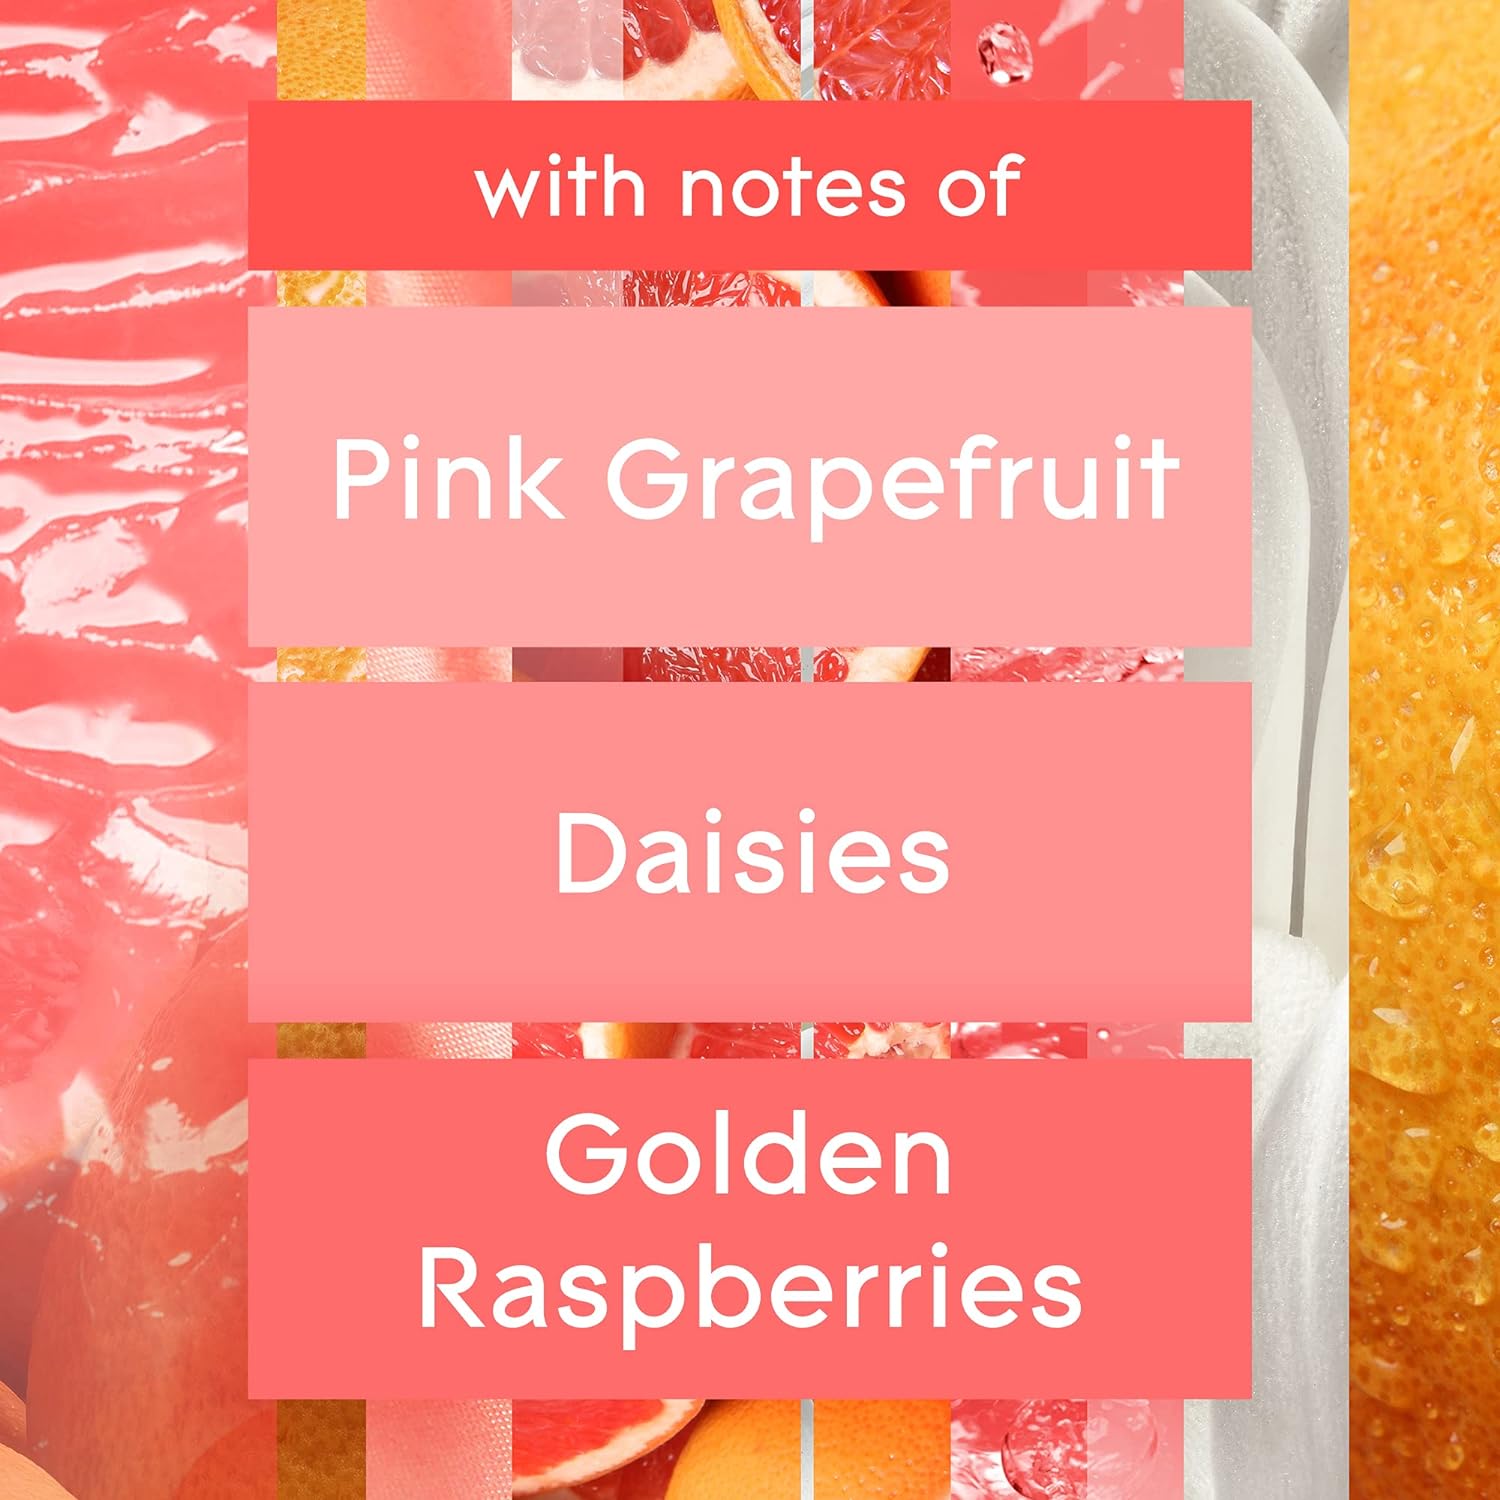 Glade Air Freshener, Room Spray, Joyful Citrus & Daisies, 8 Oz, 12 Count : Home & Kitchen